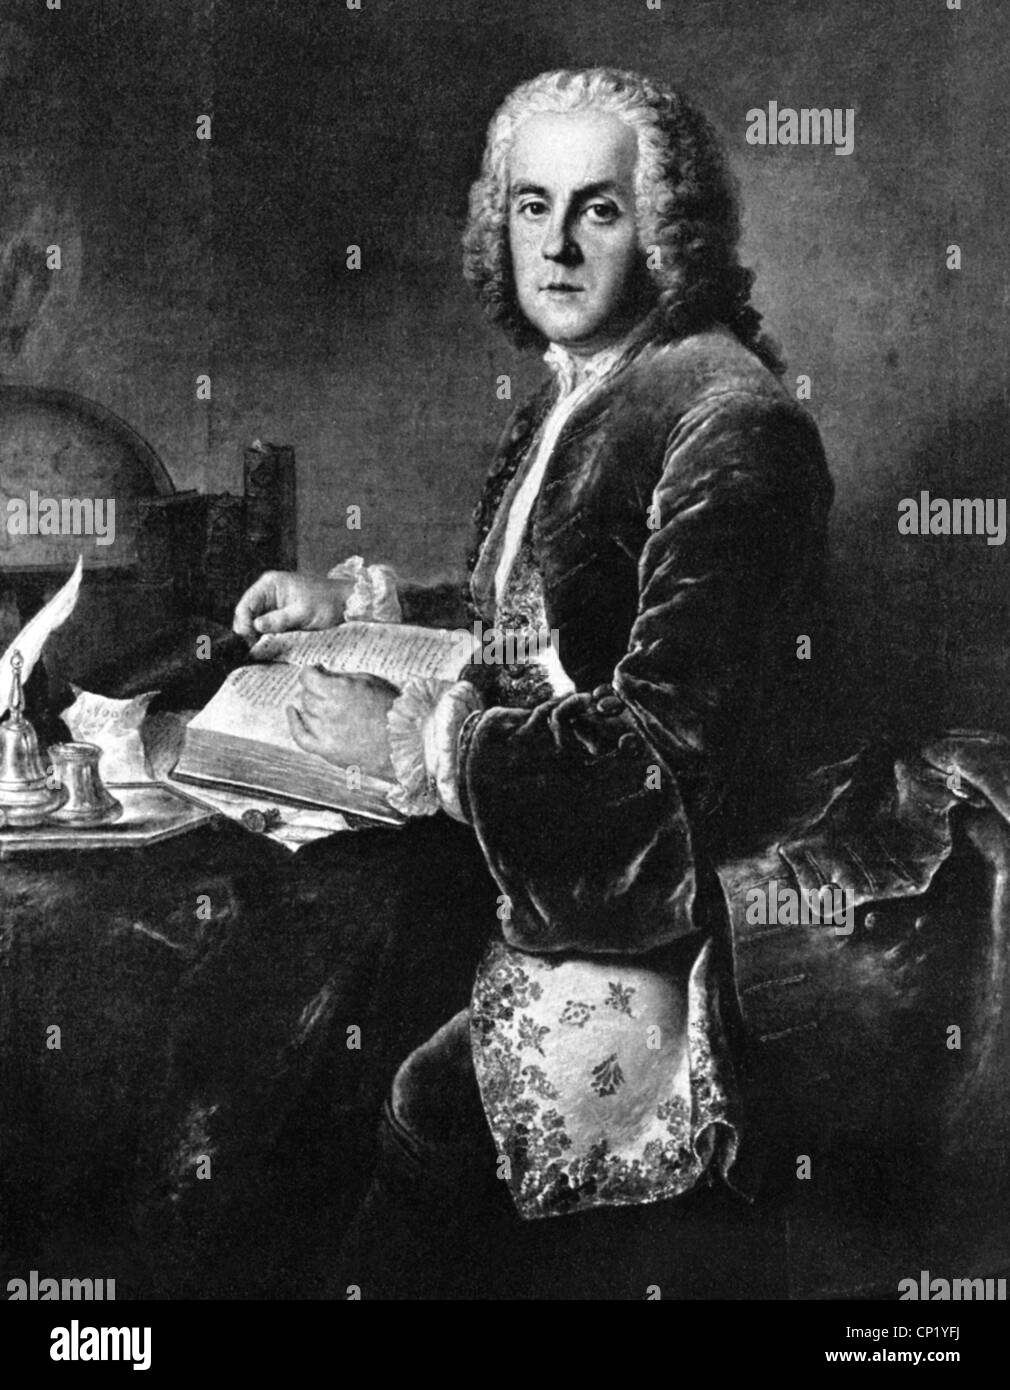 La Jordanie, Charles Etienne, 17.8.1700 - 13.5.1745, l'auteur allemand / auteur / scénariste, demi-longueur, impression après la peinture, vers 1740, l'artiste n'a pas d'auteur pour être effacé Banque D'Images